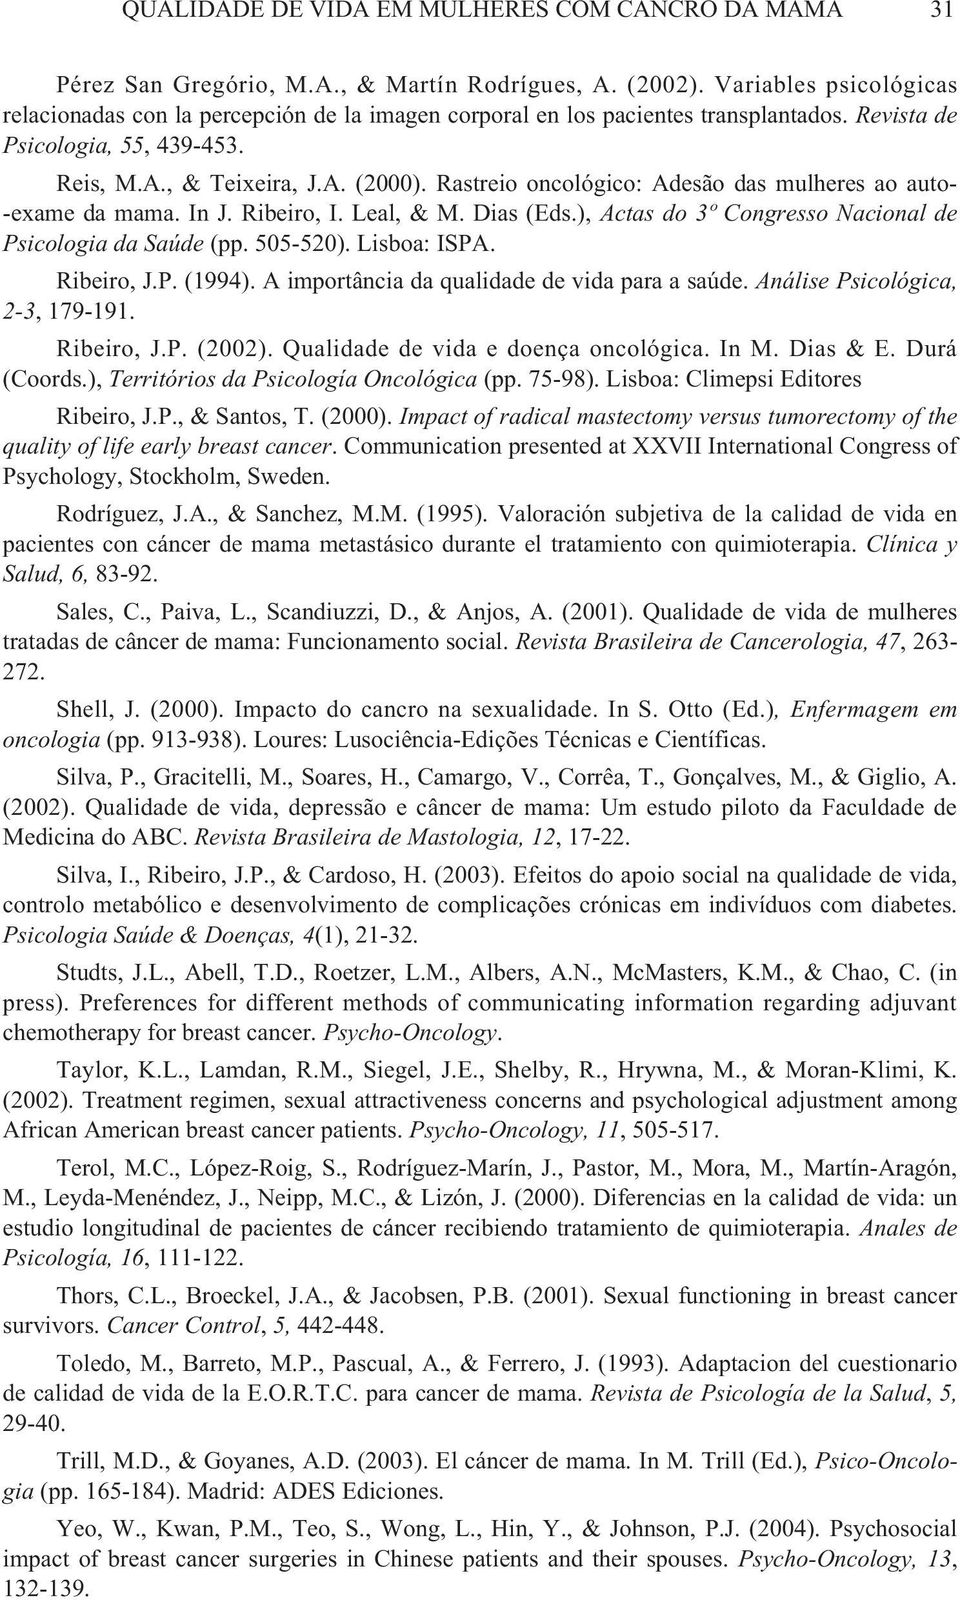 Rastreio oncológico: Adesão das mulheres ao auto- -exame da mama. In J. Ribeiro, I. Leal, & M. Dias (Eds.), Actas do 3º Congresso Nacional de Psicologia da Saúde (pp. 505-520). Lisboa: ISPA.